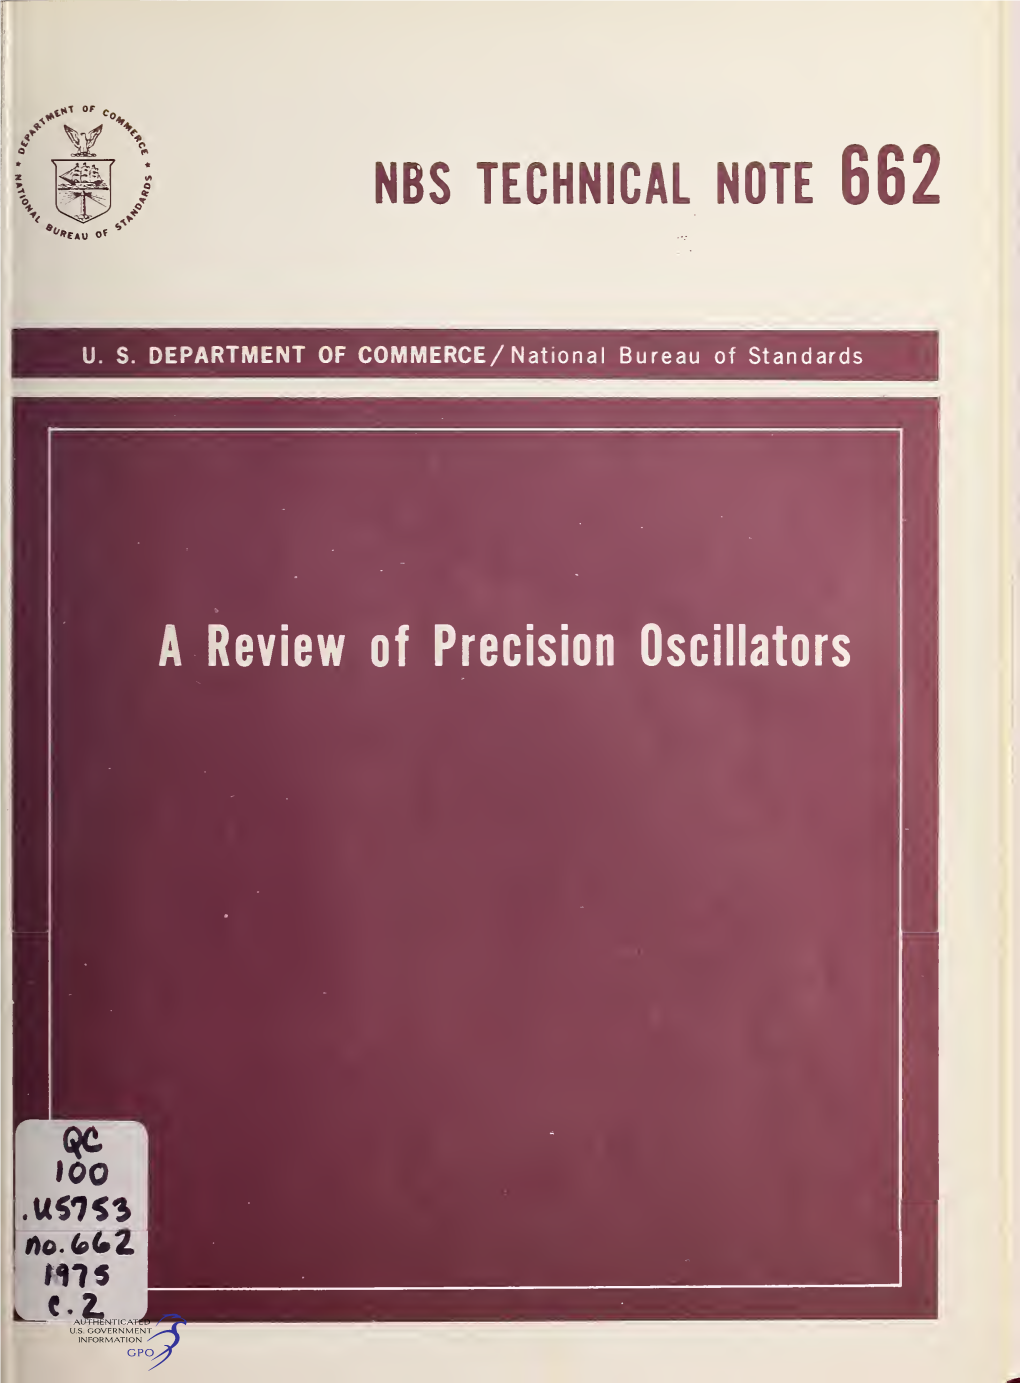 A Review of Precision Oscillators NATIONAL BUREAU of STANDARDS